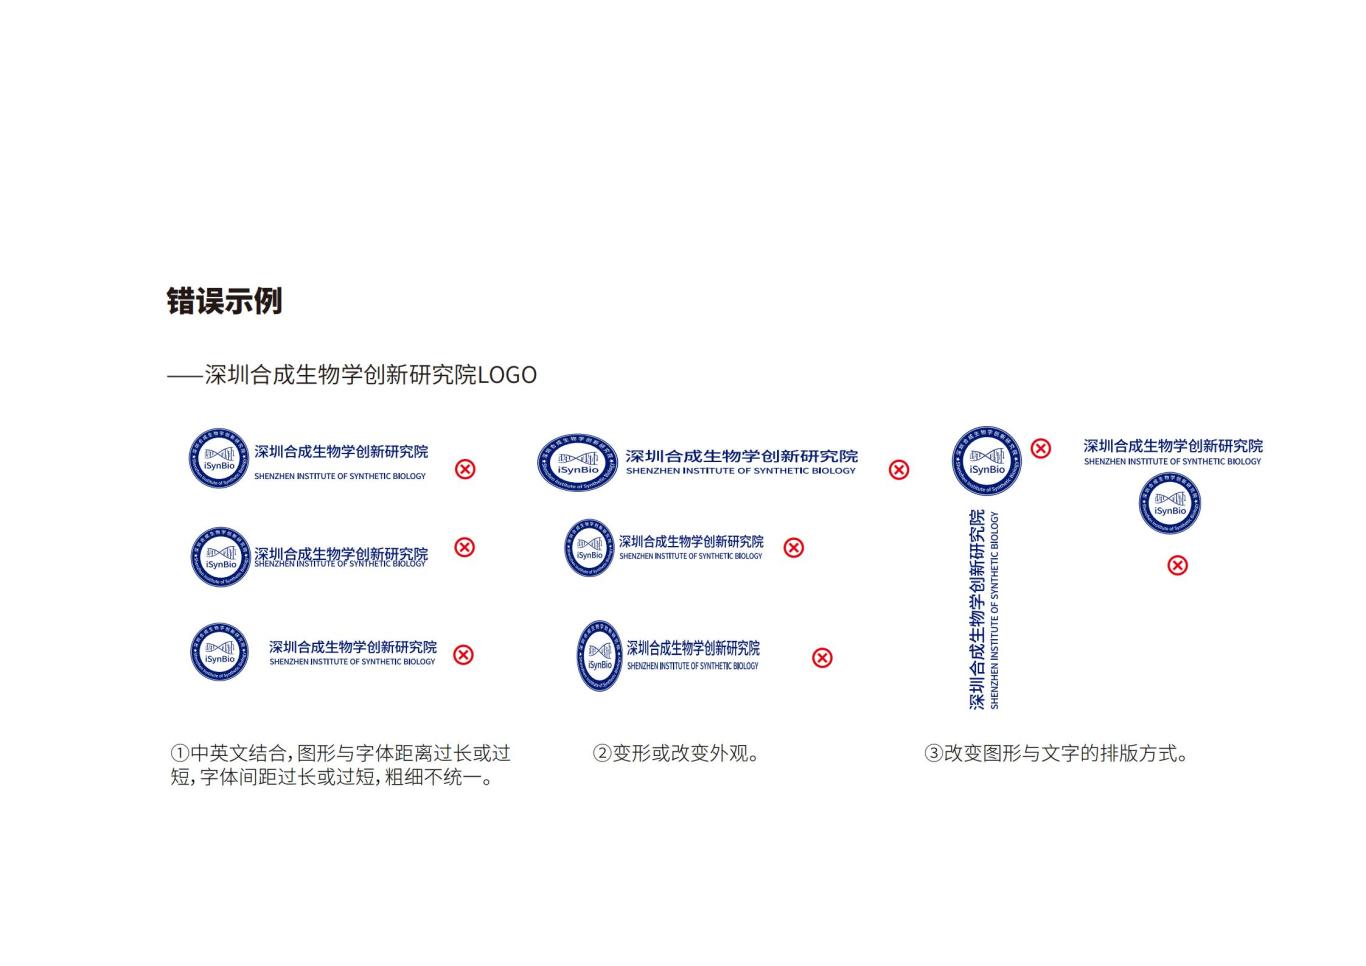 深圳合成生物学创新研究院品牌设计规范图18